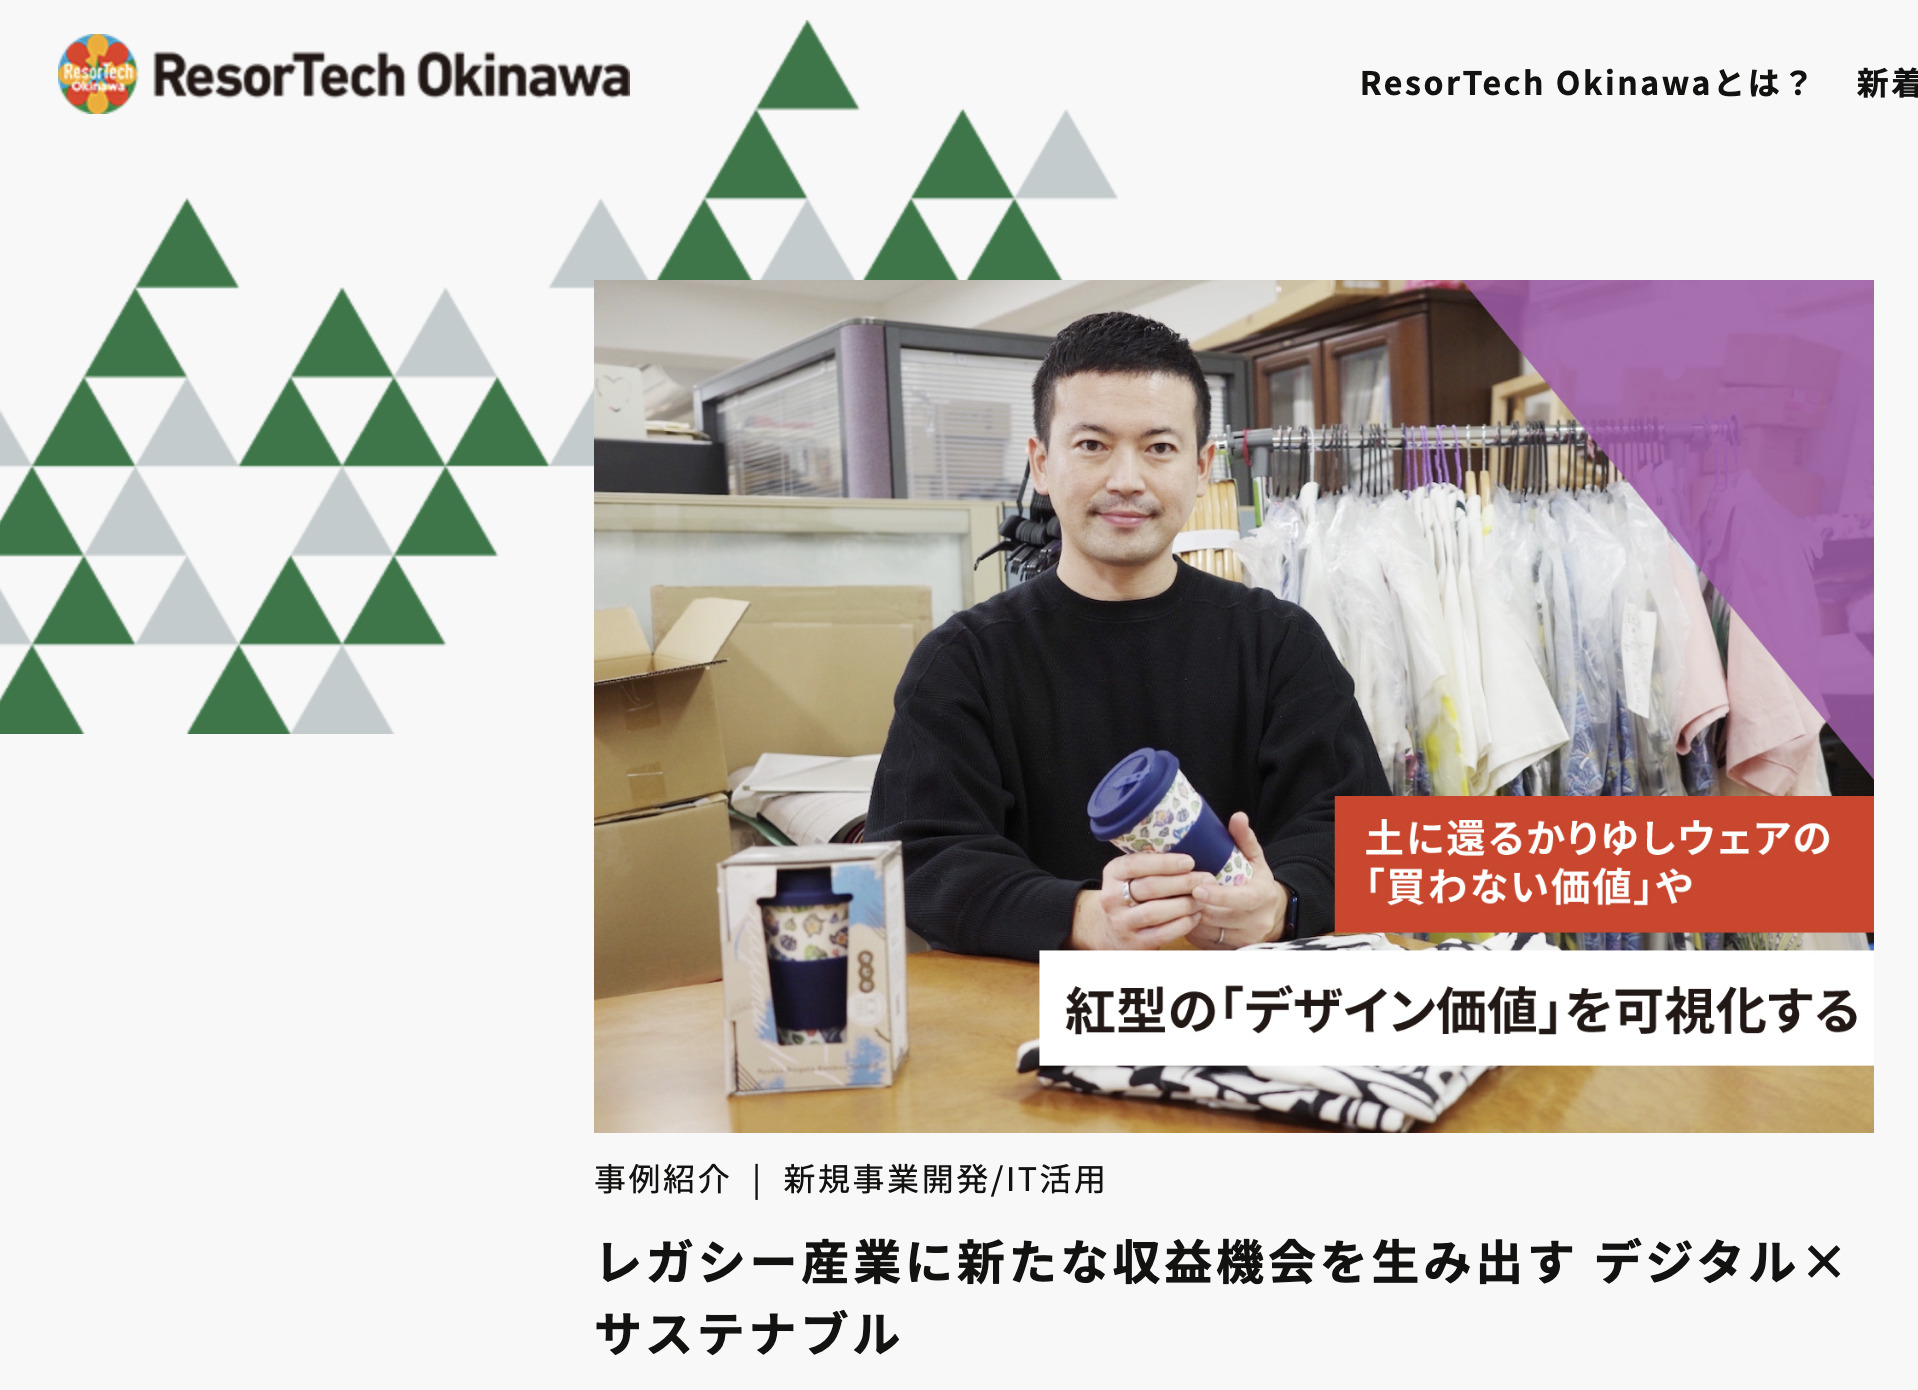 Webメディア「ResorTech Okinawa」に当社の記事が掲載されました。